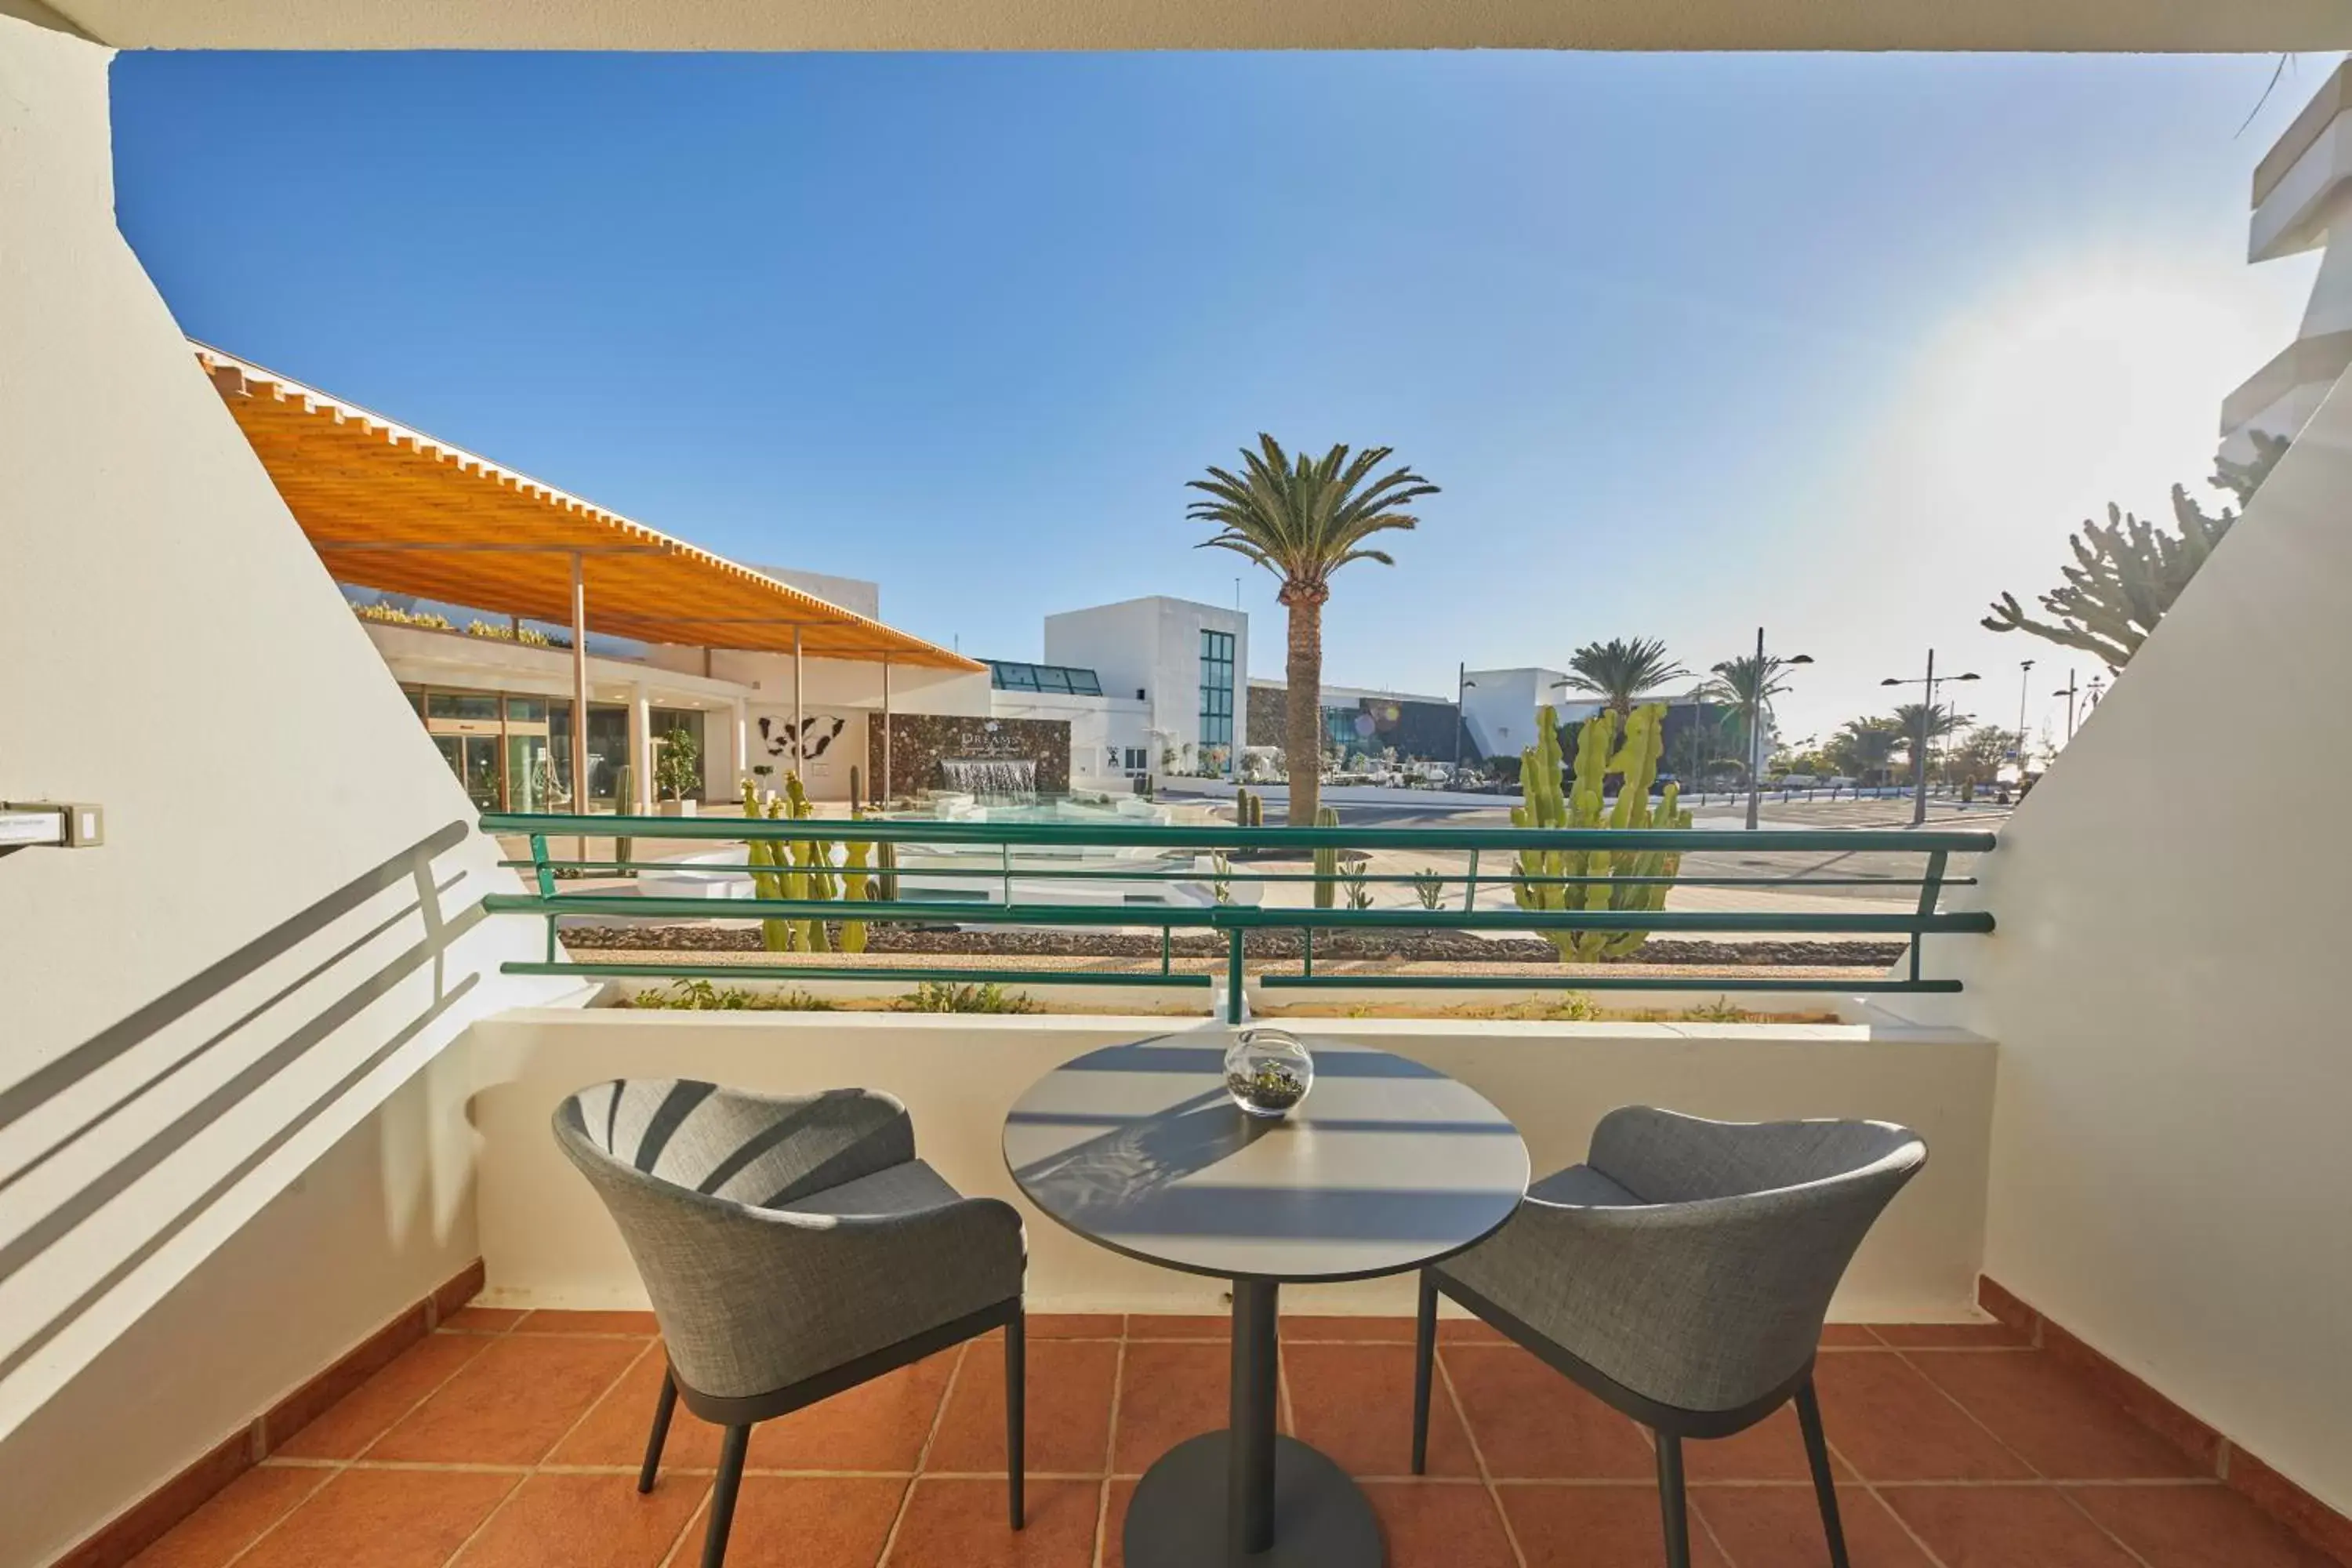 View (from property/room) in Dreams Lanzarote Playa Dorada Resort & Spa